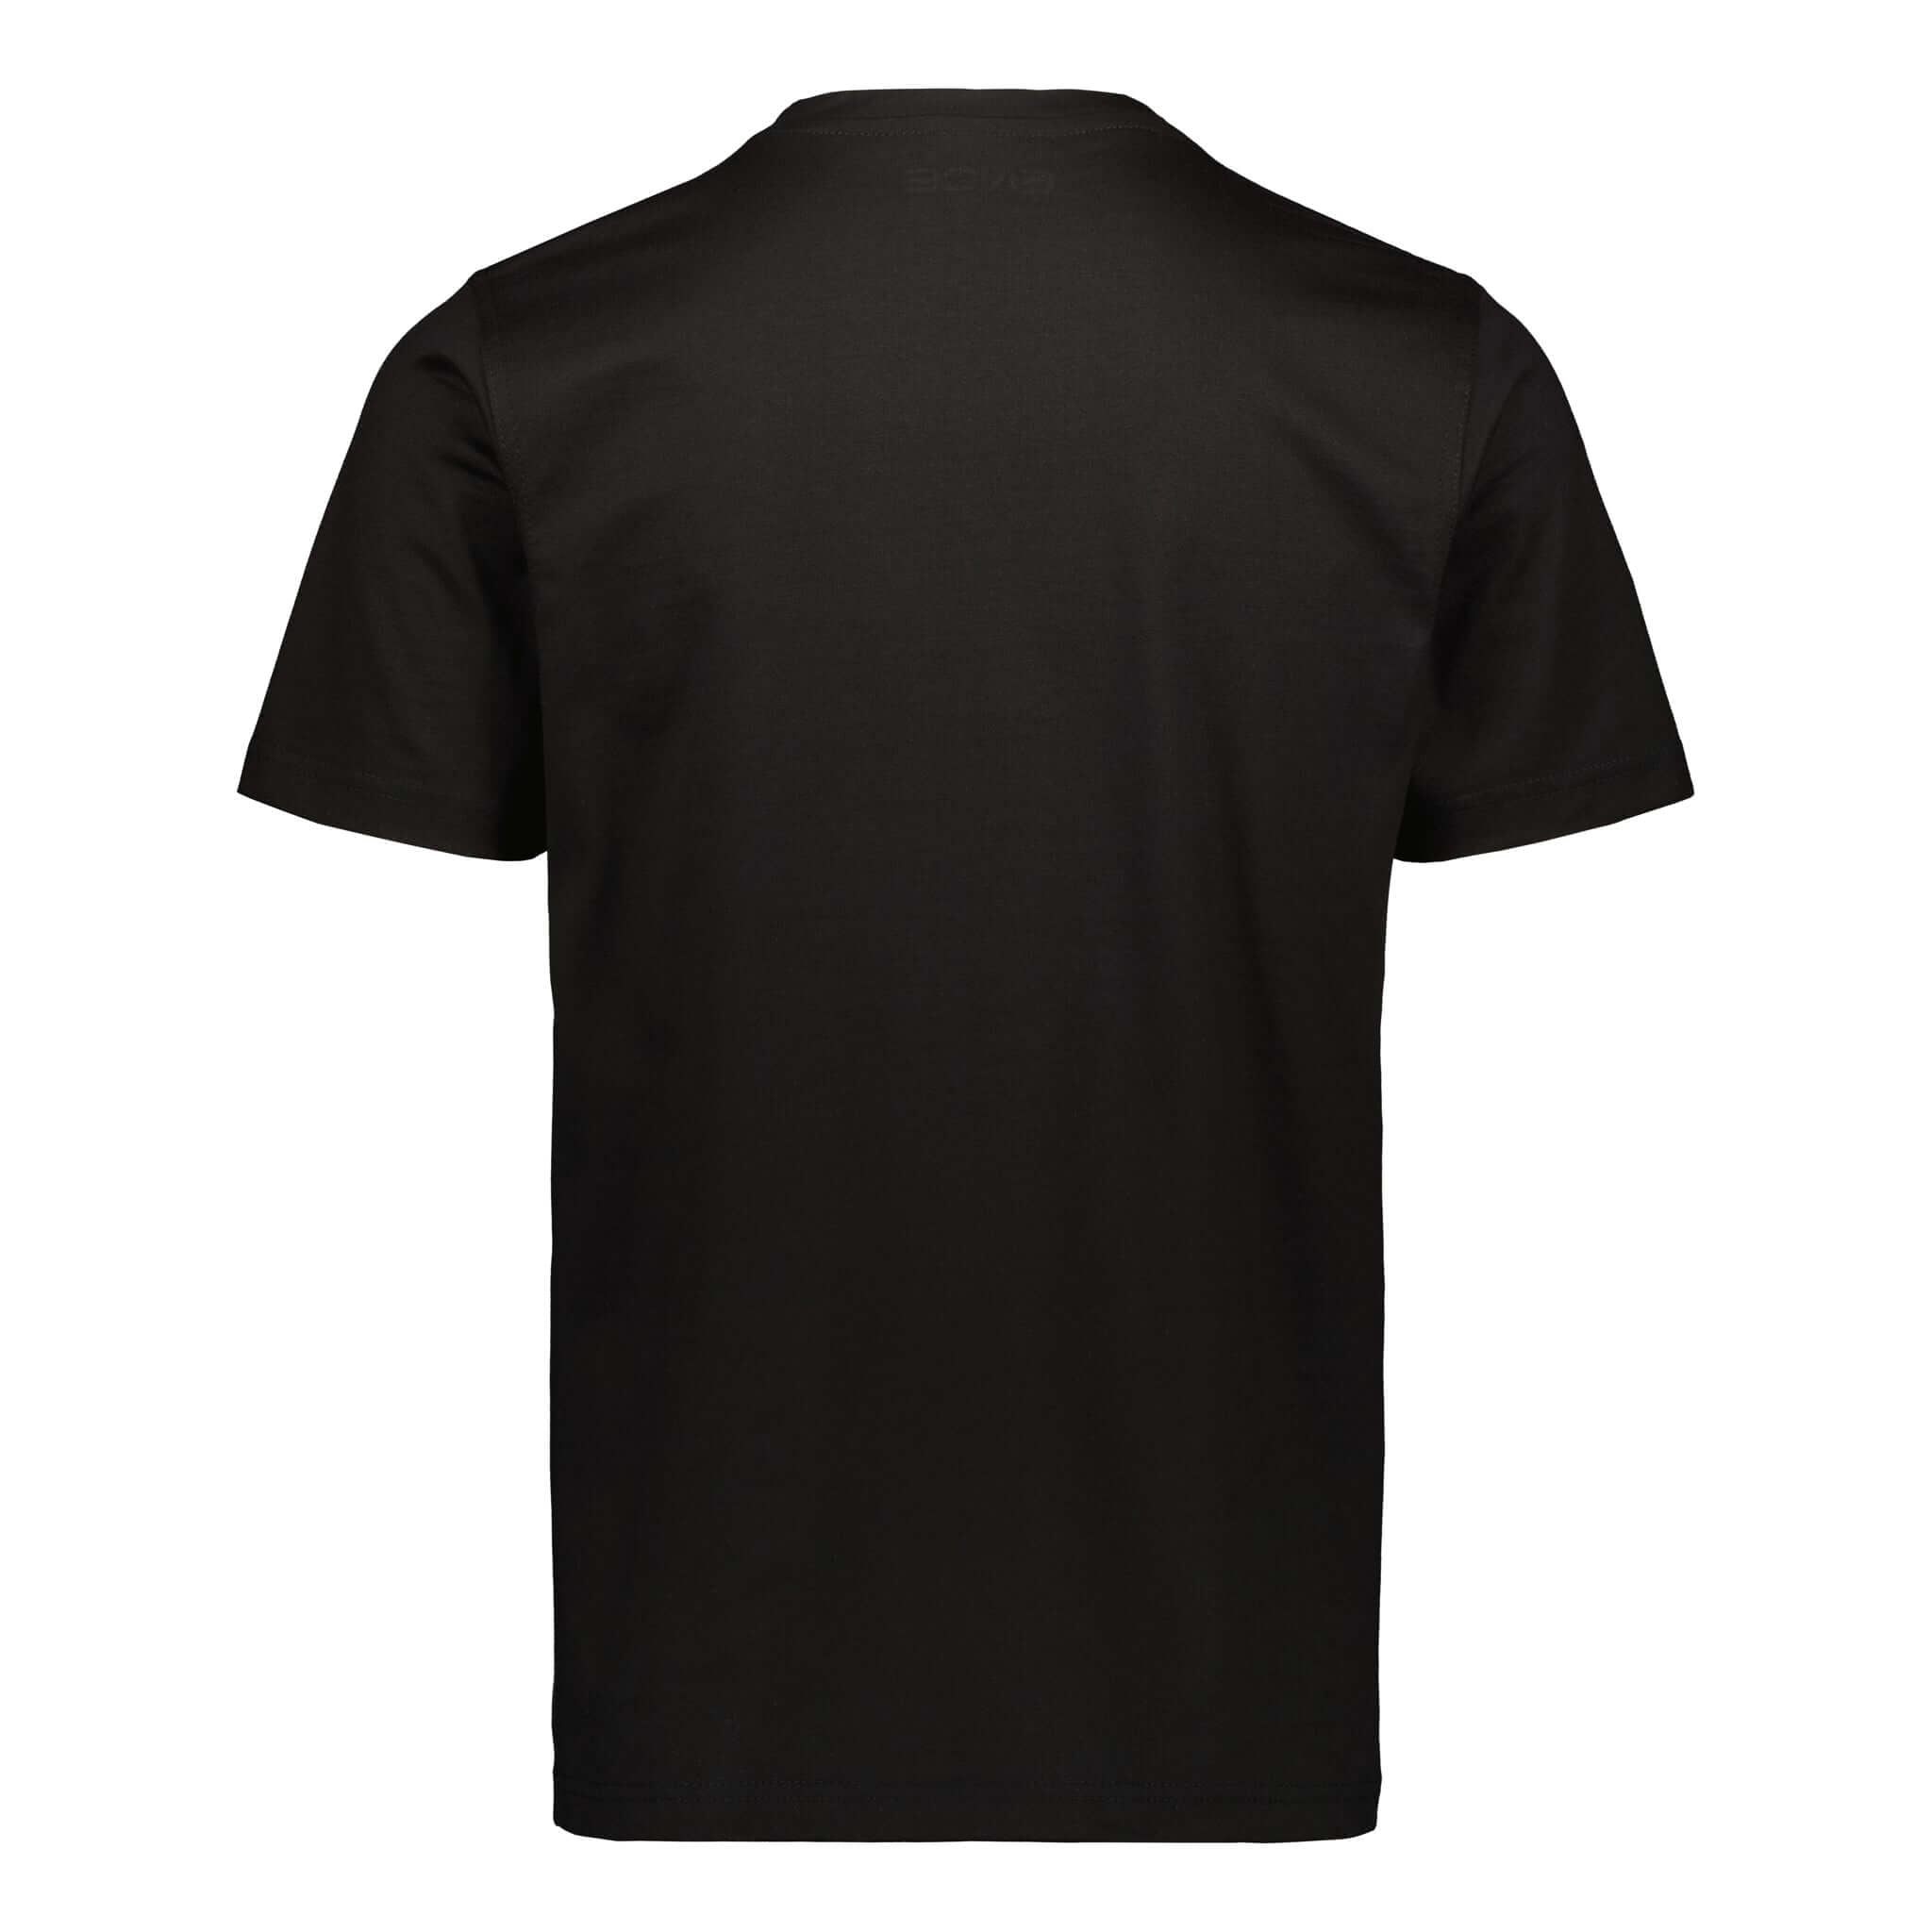 ENCE Square Black T-Shirt | ENCE Shop